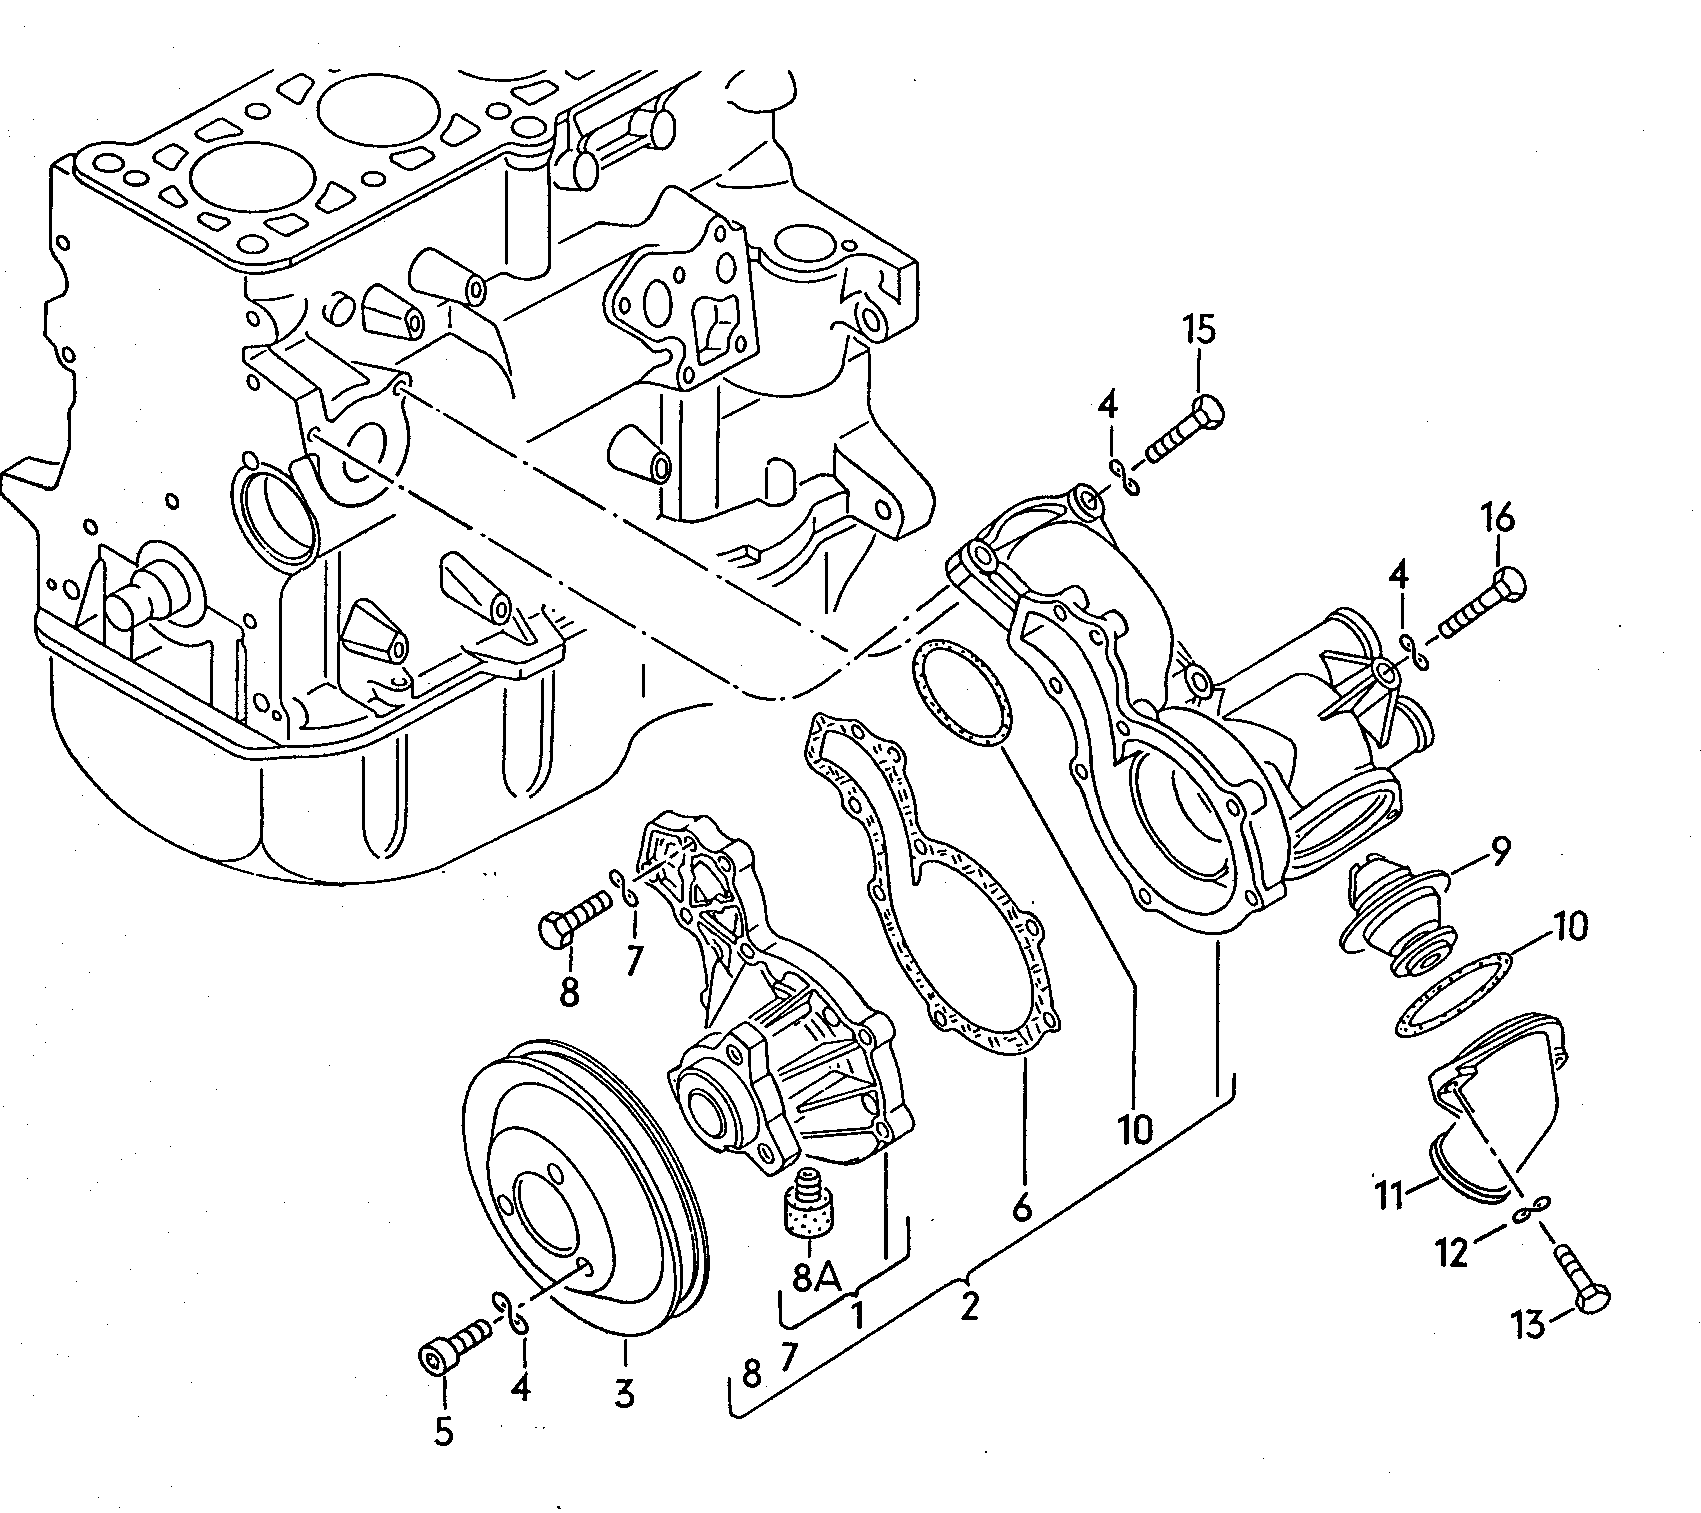 Coolant pump 1.8ltr. - Audi 5000 - a50